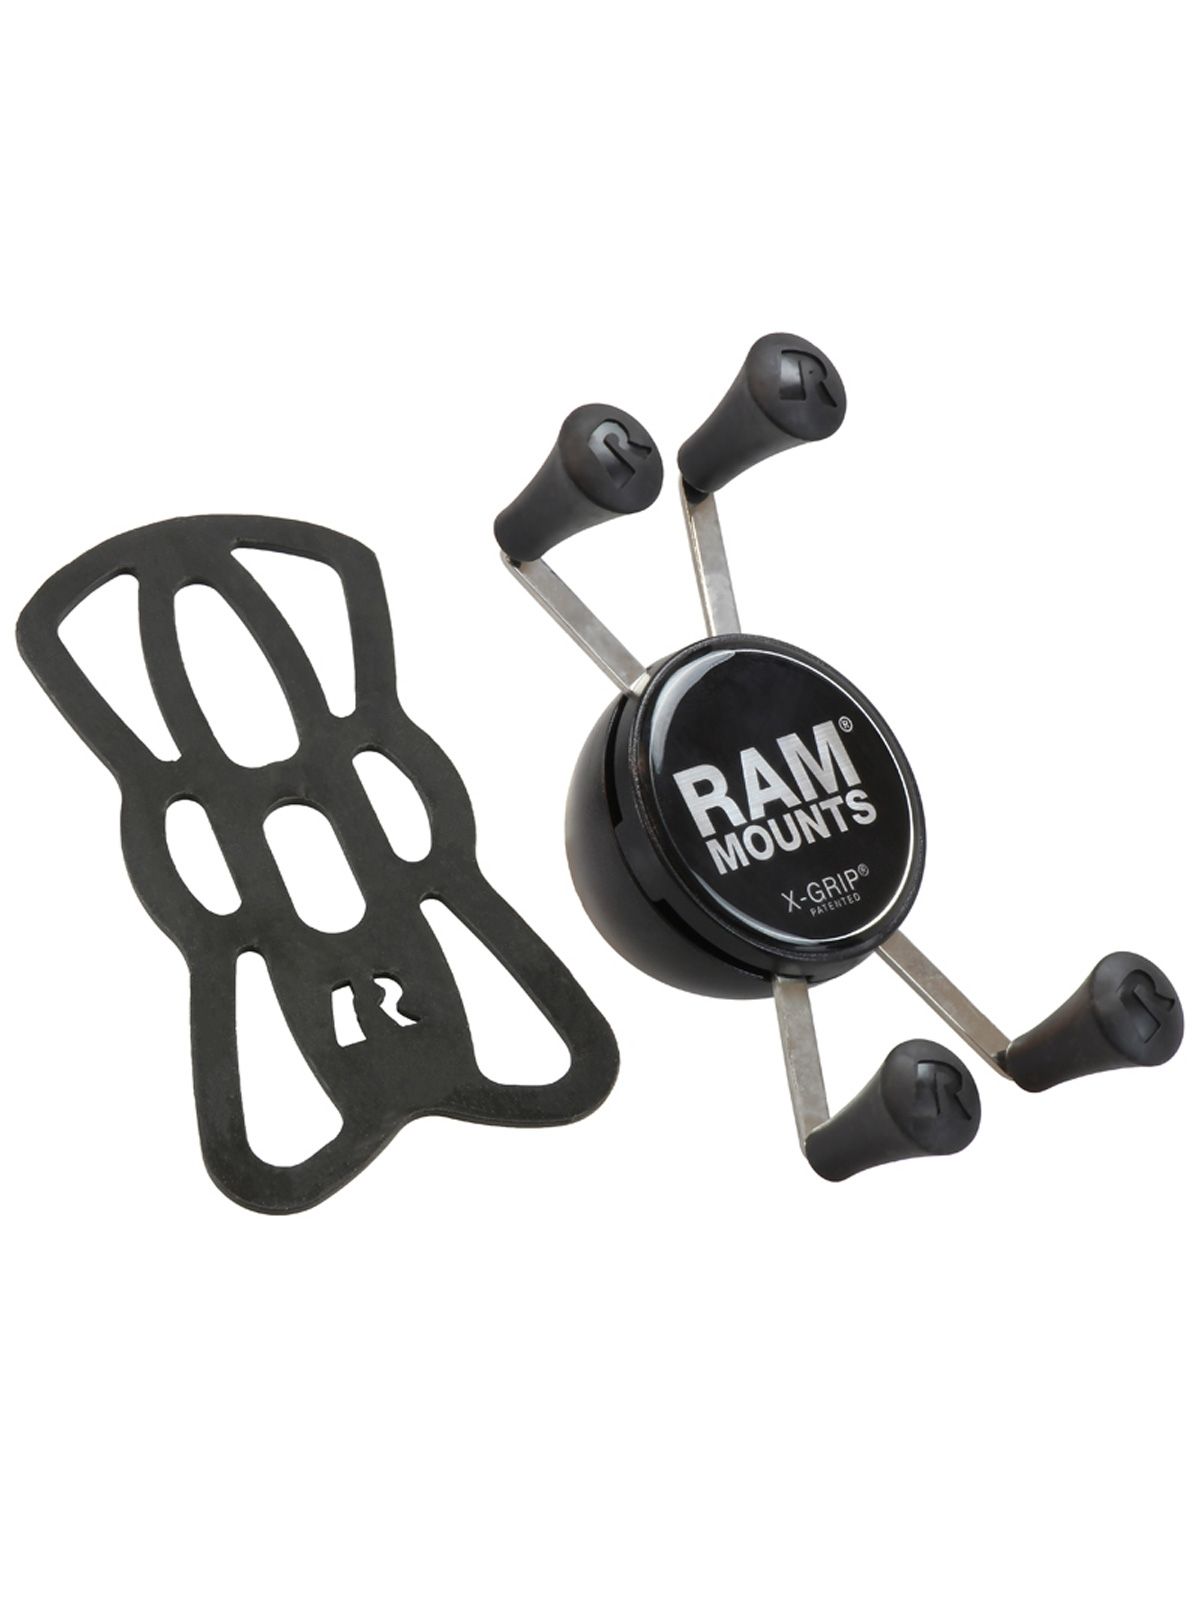 RAM Mounts X-Grip Halteklammer für Smartphones bis 82,6 mm Breite - ohne Kugel